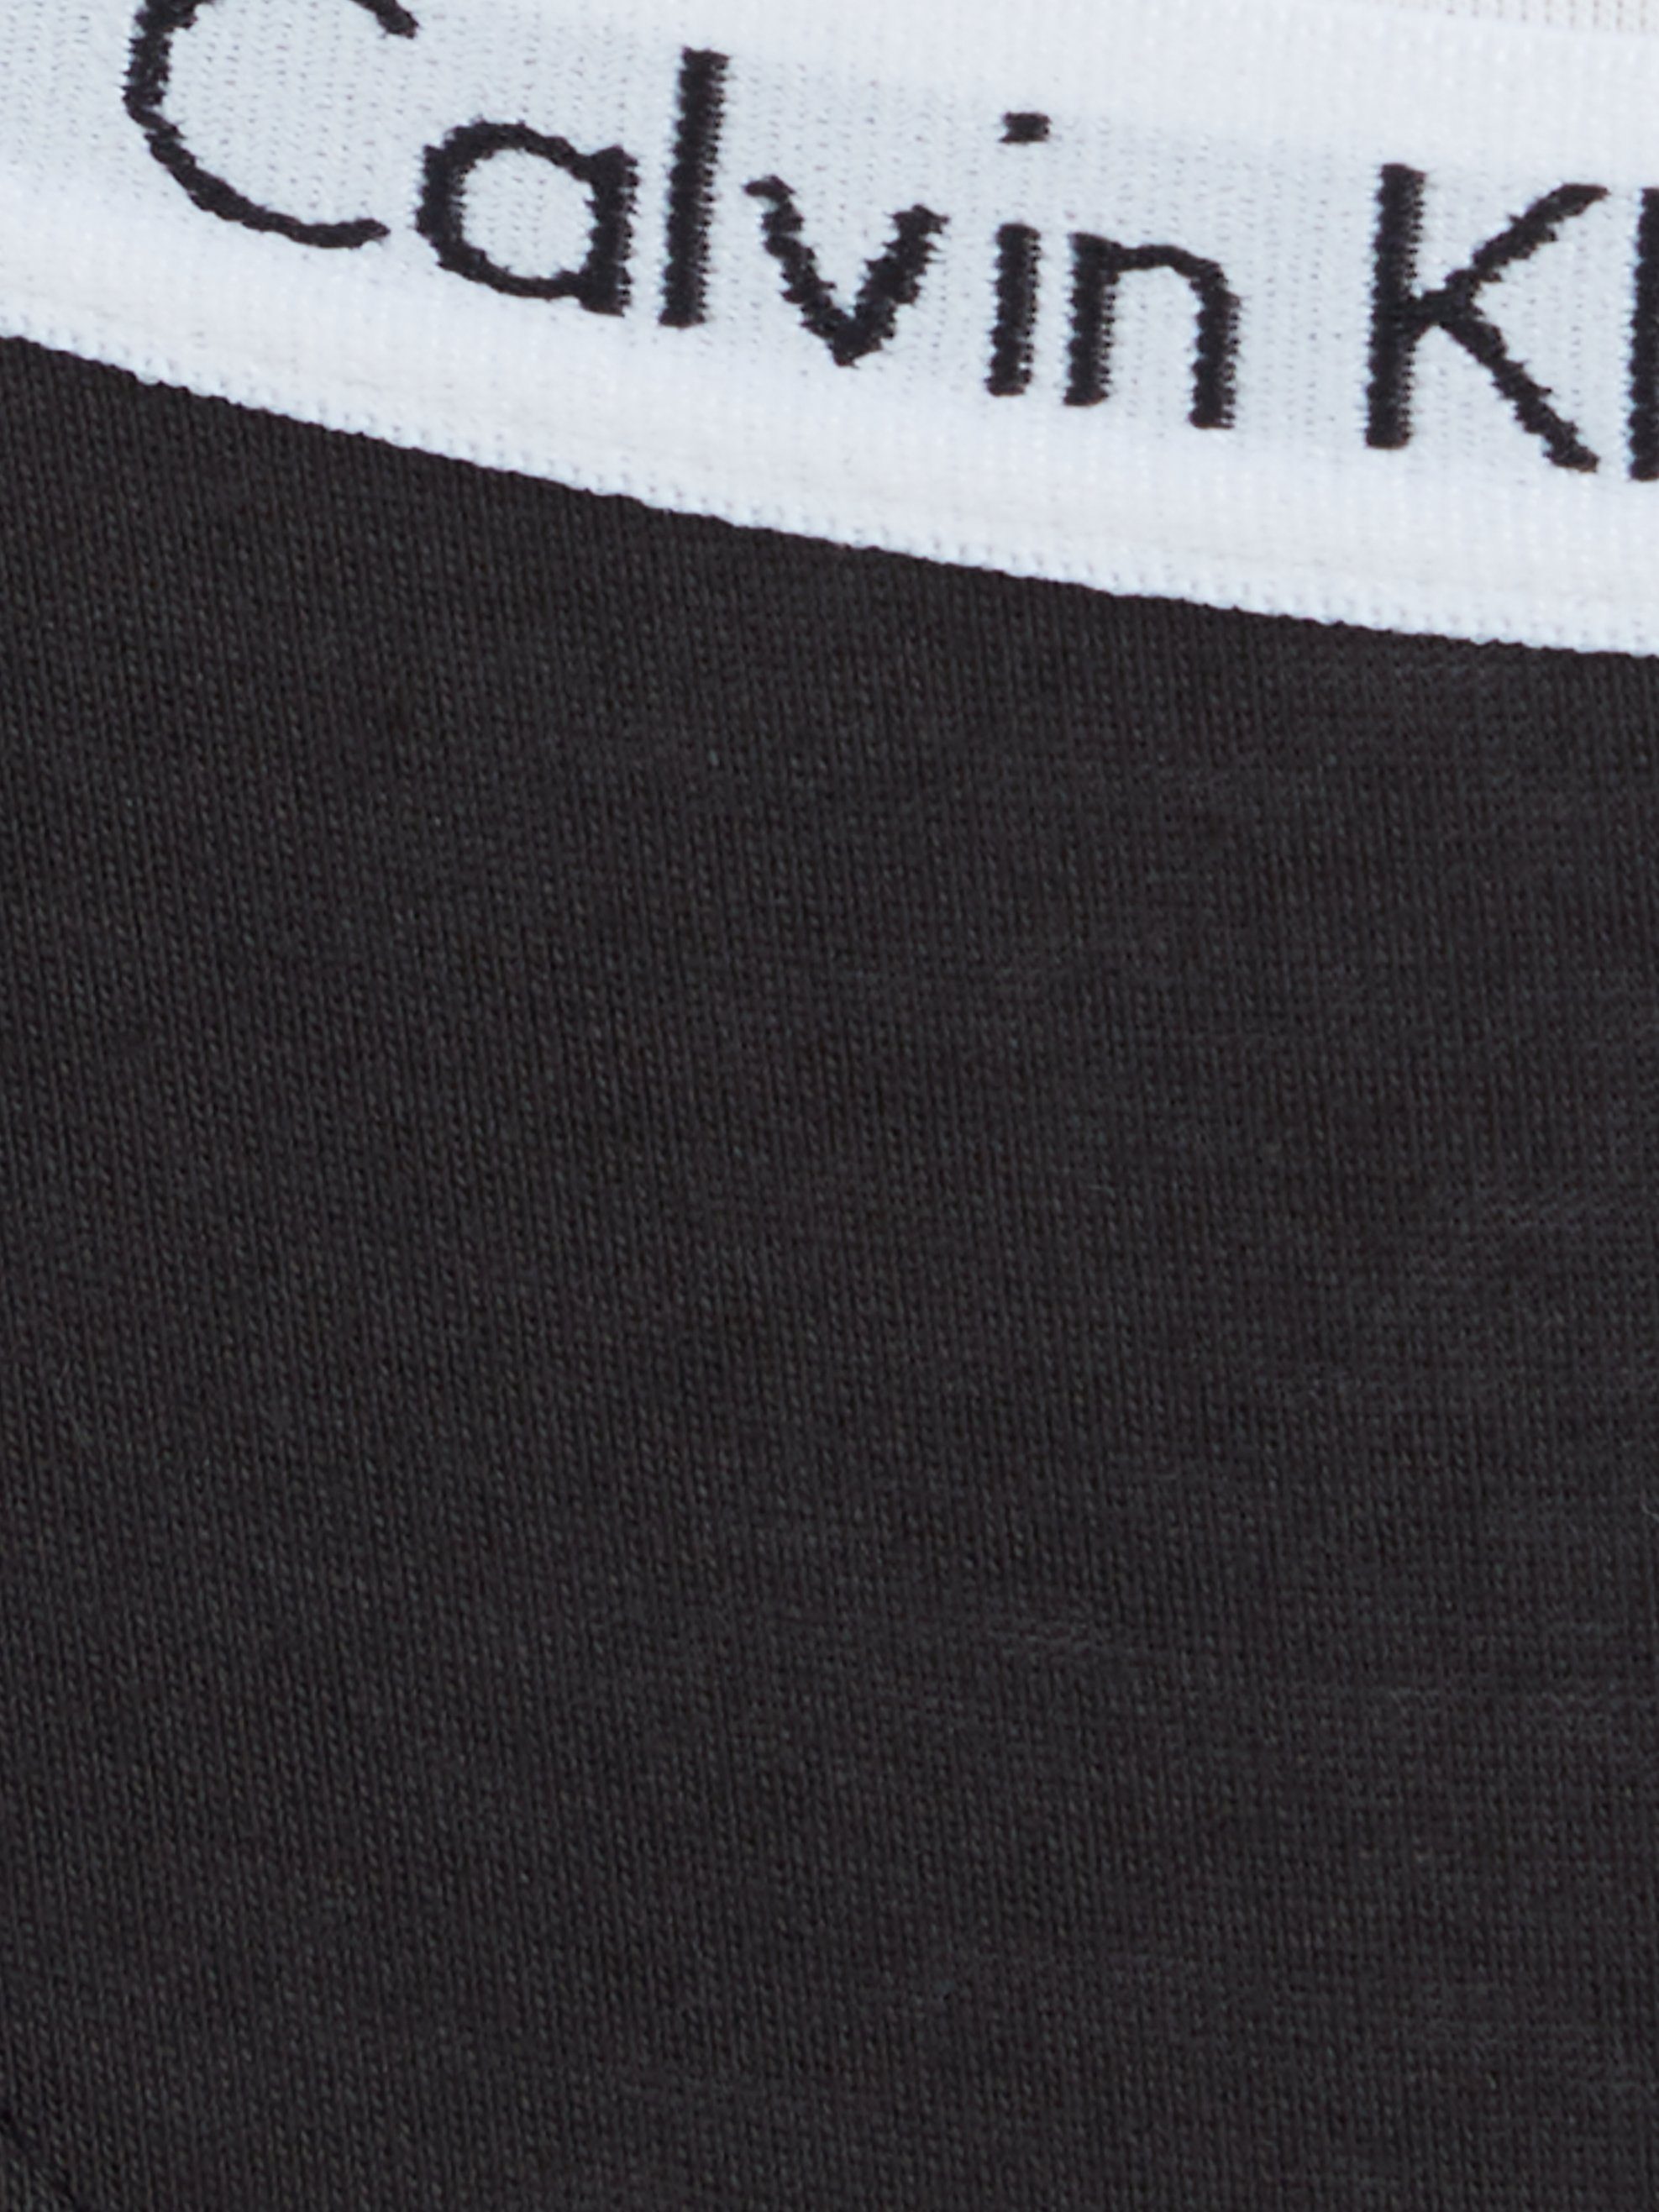 Klein Bikinislip Logobund schwarz mit Calvin klassischem Underwear